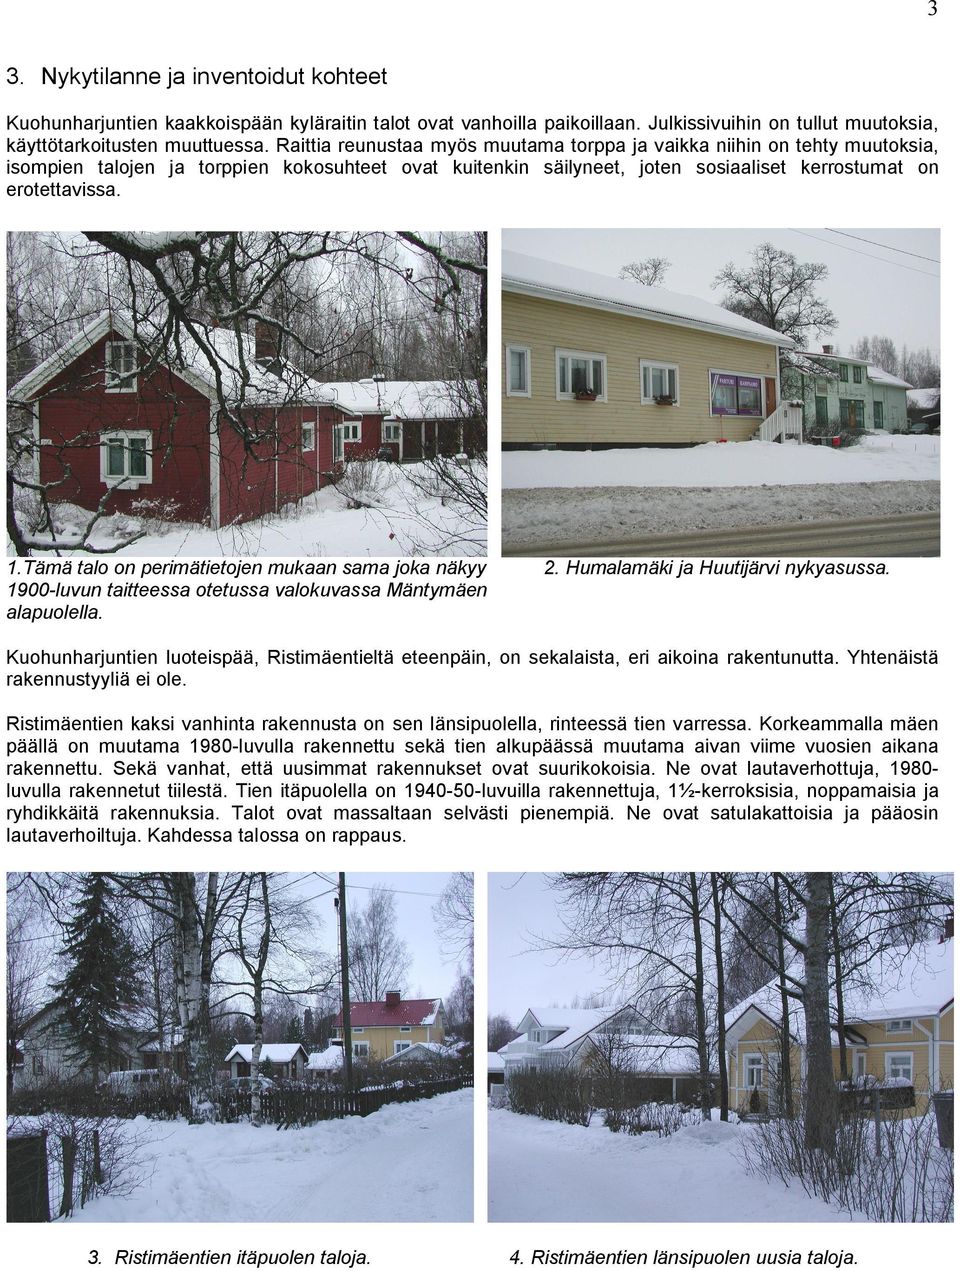 Tämä talo on perimätietojen mukaan sama joka näkyy 1900-luvun taitteessa otetussa valokuvassa Mäntymäen alapuolella. 2. Humalamäki ja Huutijärvi nykyasussa.